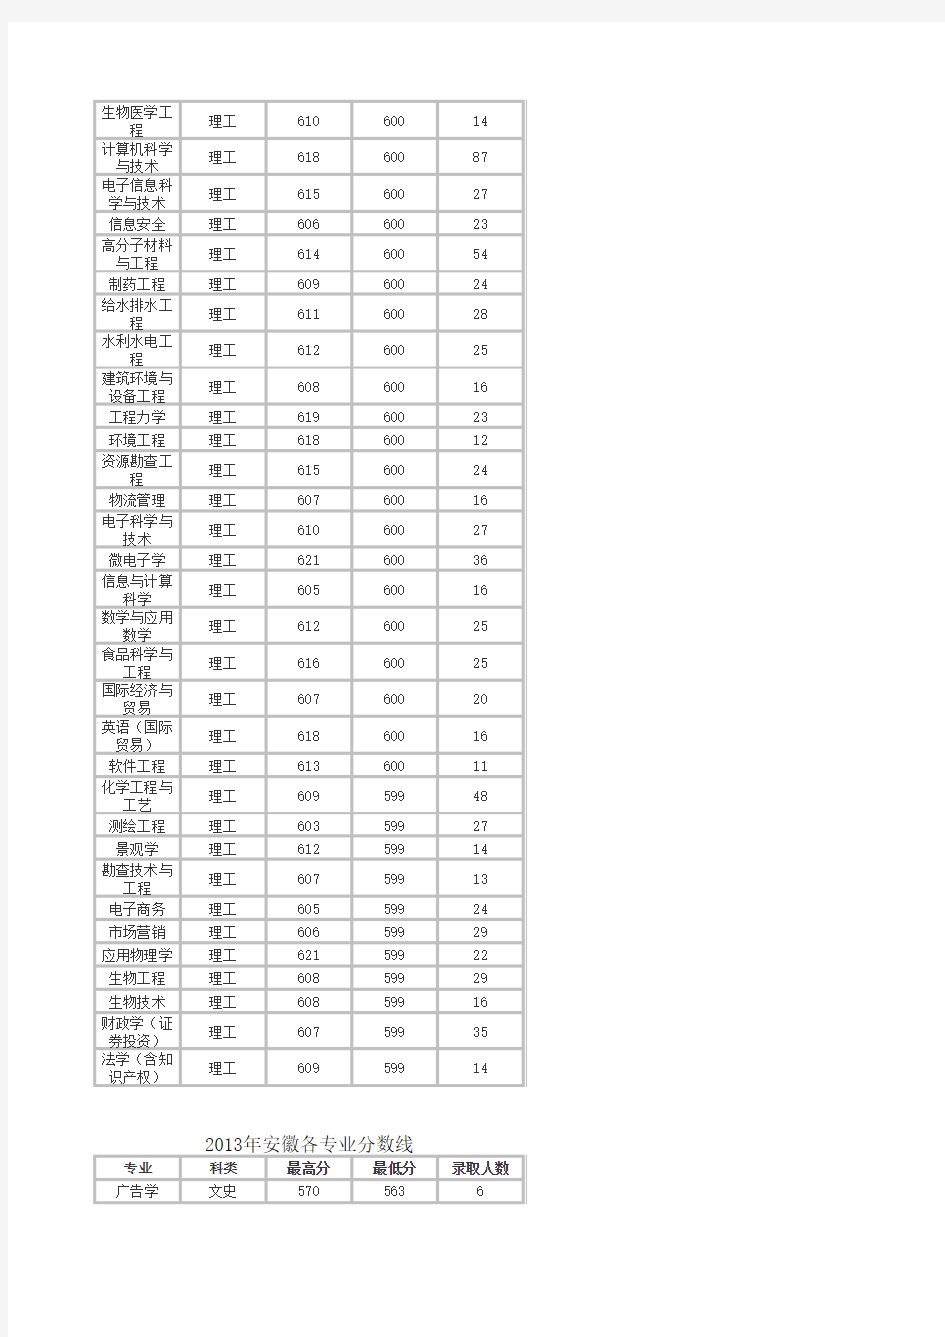 合工大2010-2014年专业分数线(学长亲手制作排序)